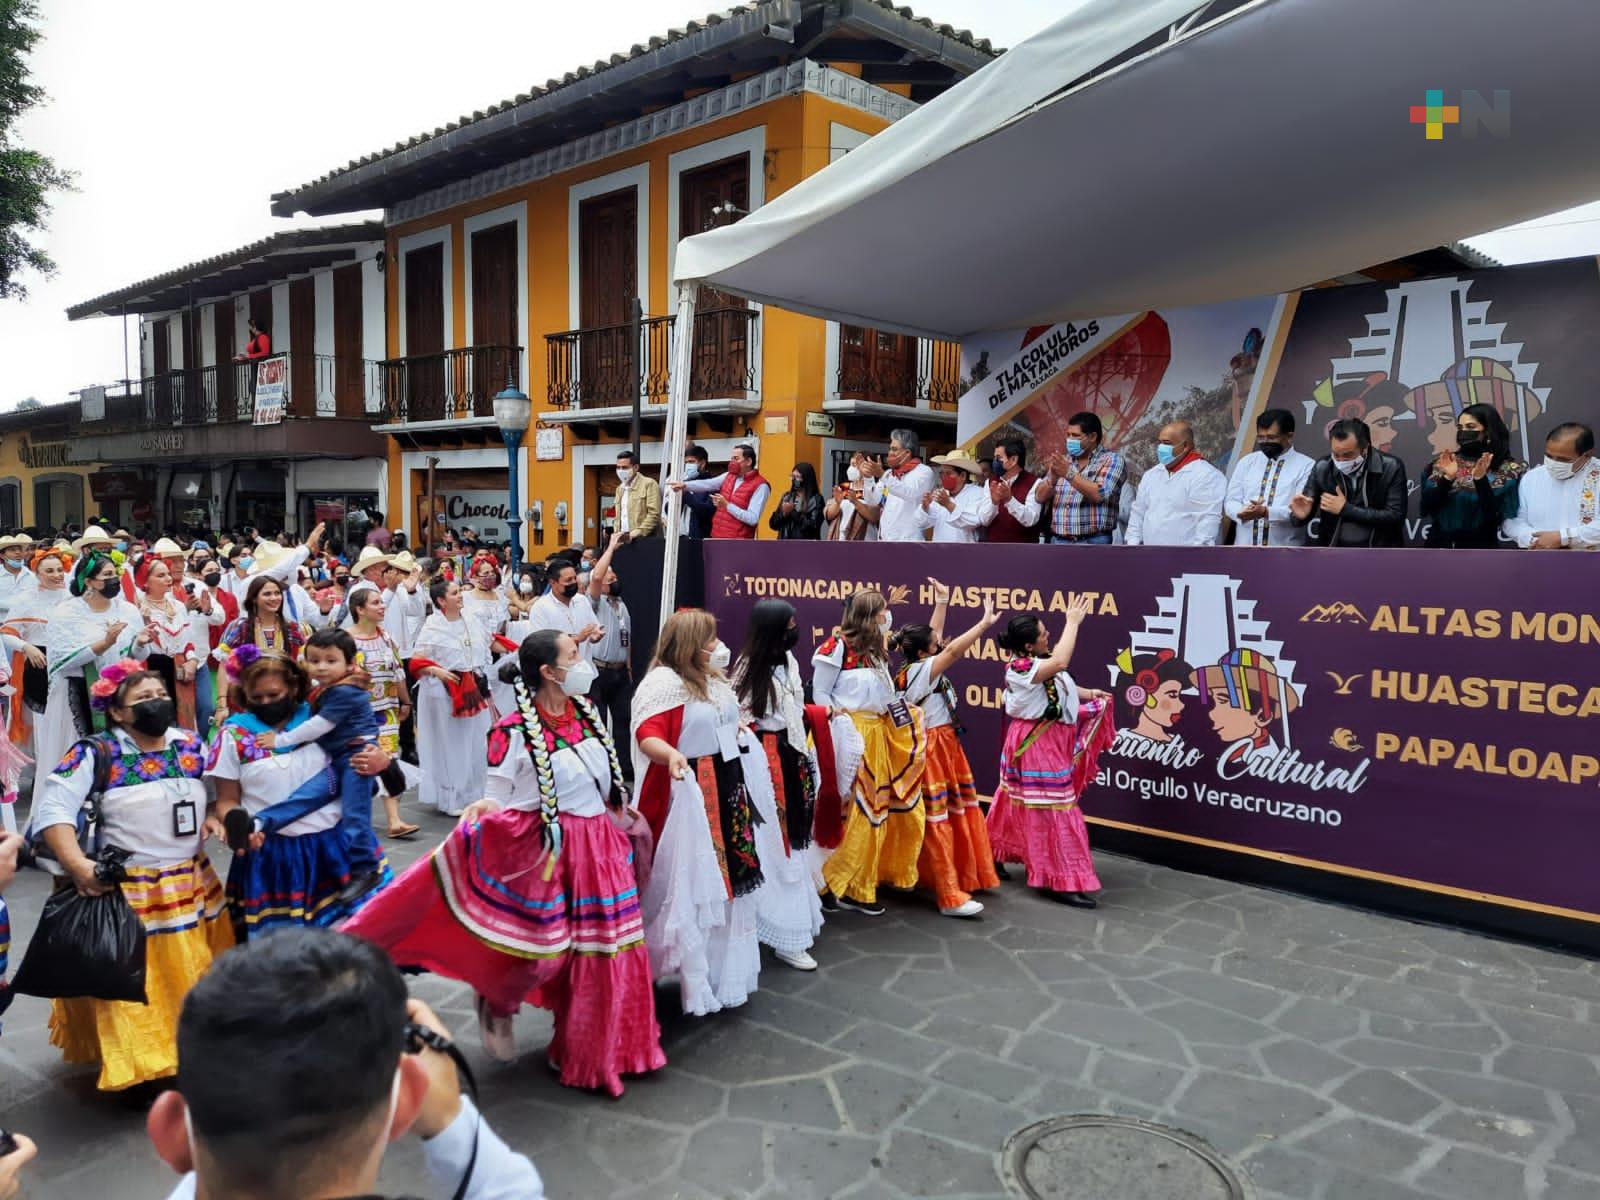 Unión familiar y sana convivencia, valores que promueve Encuentro Cultural Orgullo Veracruzano